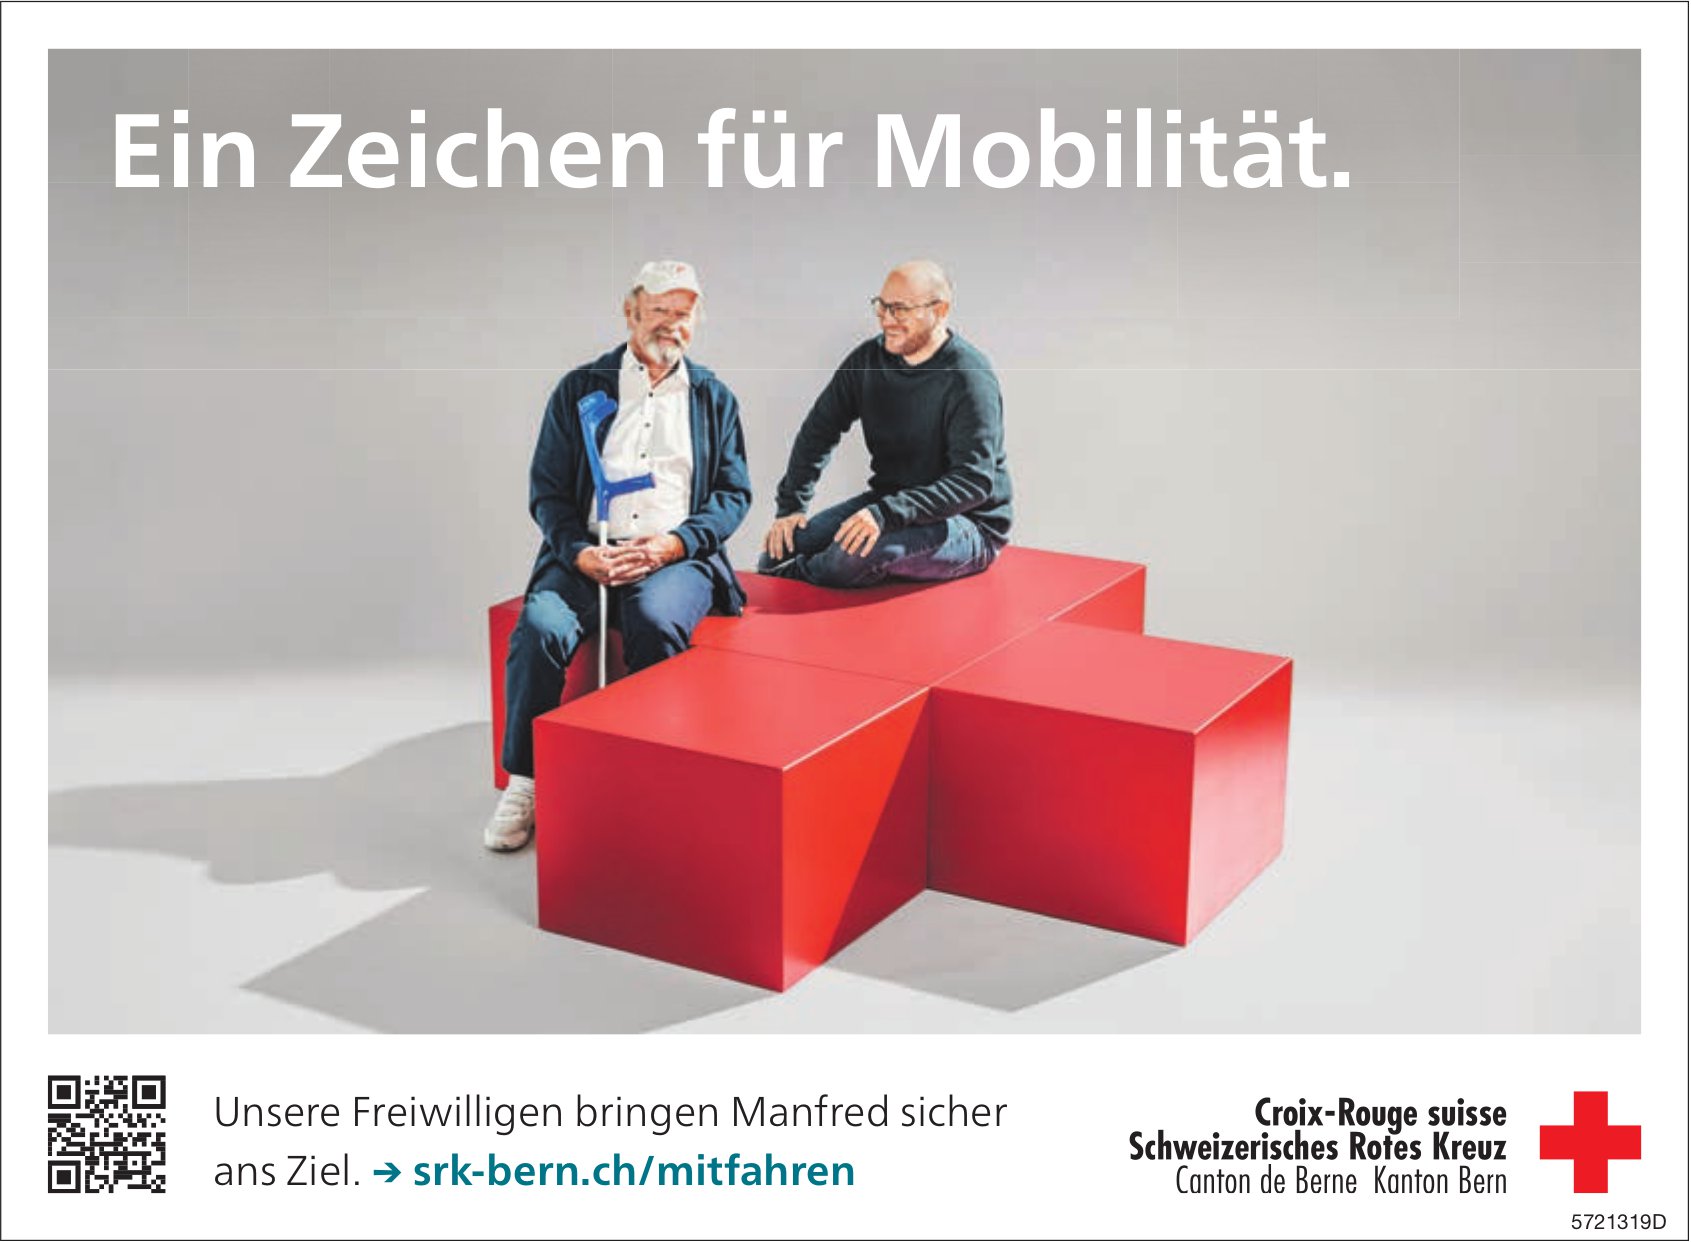 Schweizerisches Rotes Kreuz, Kanton Bern - Ein Zeichen für Mobilität.